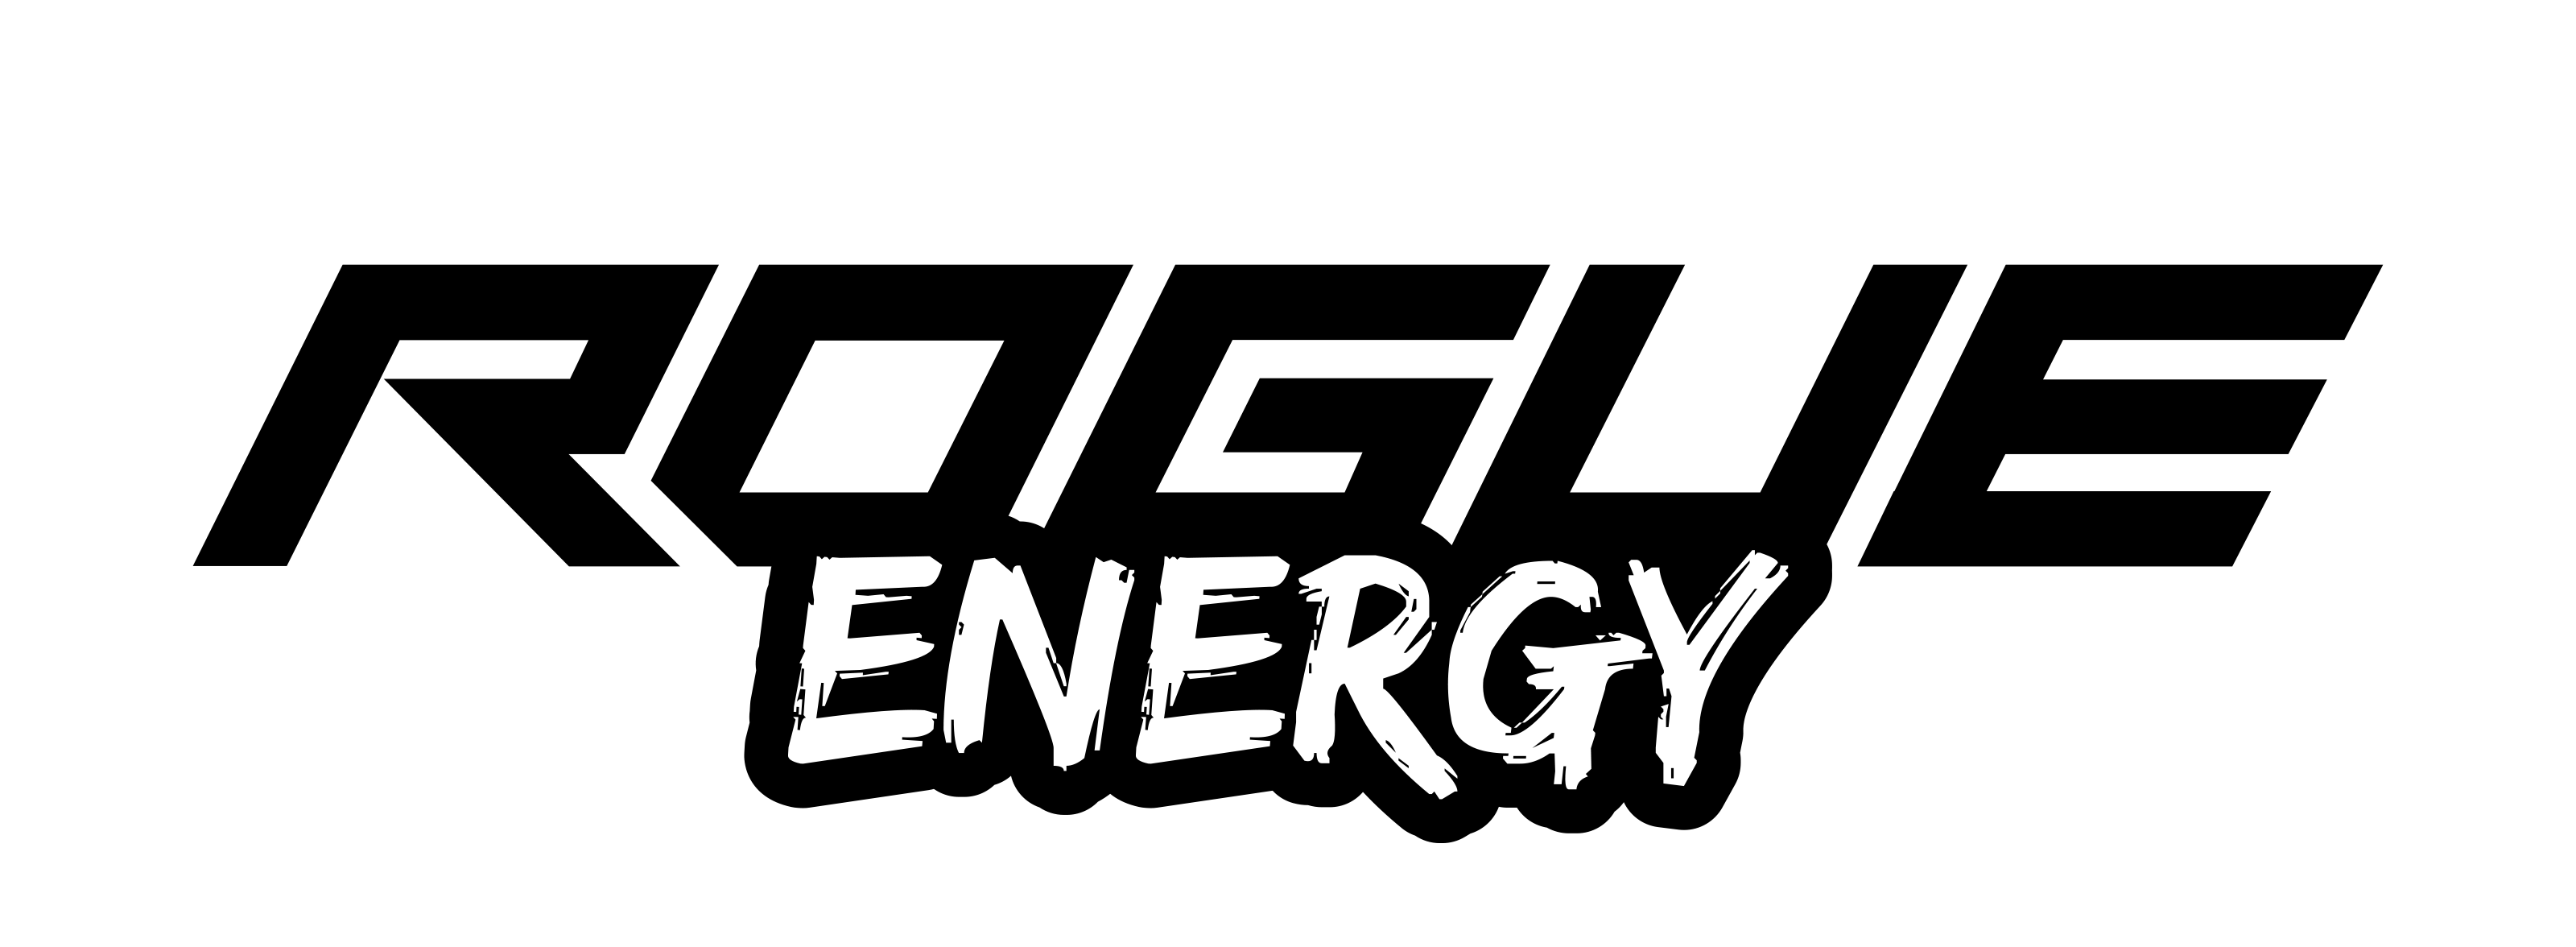 Gaming Sponsorships - Rogue Energy